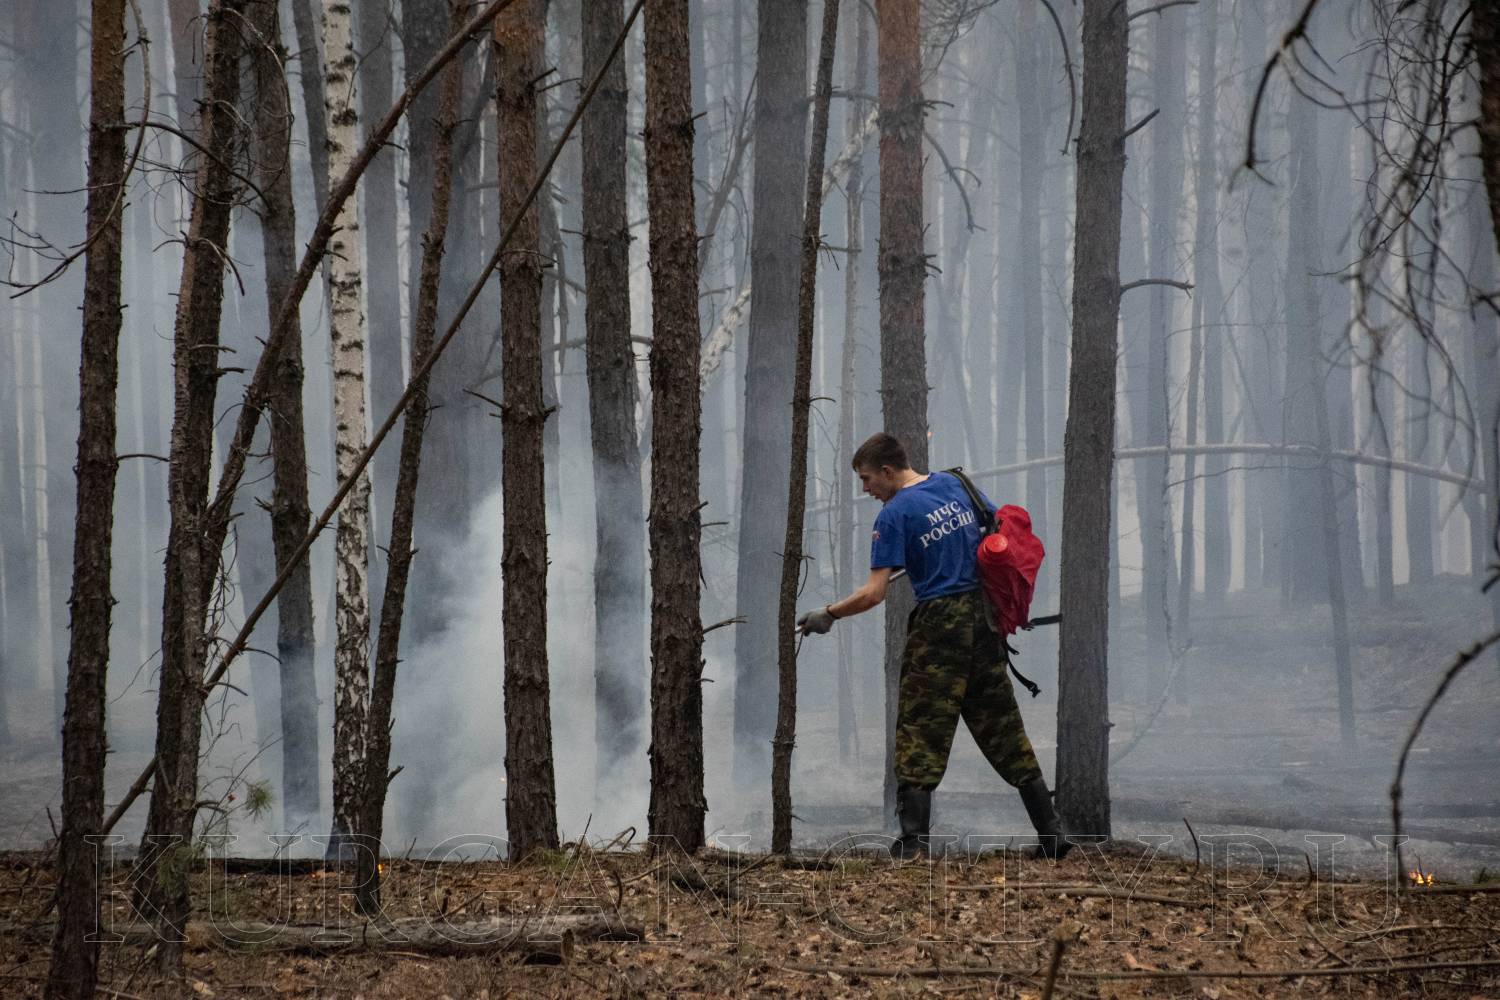 Глава города Кургана Елена Ситникова призвала горожан строго соблюдать все правила пожарной безопасности и воздержаться от разжигания огня.